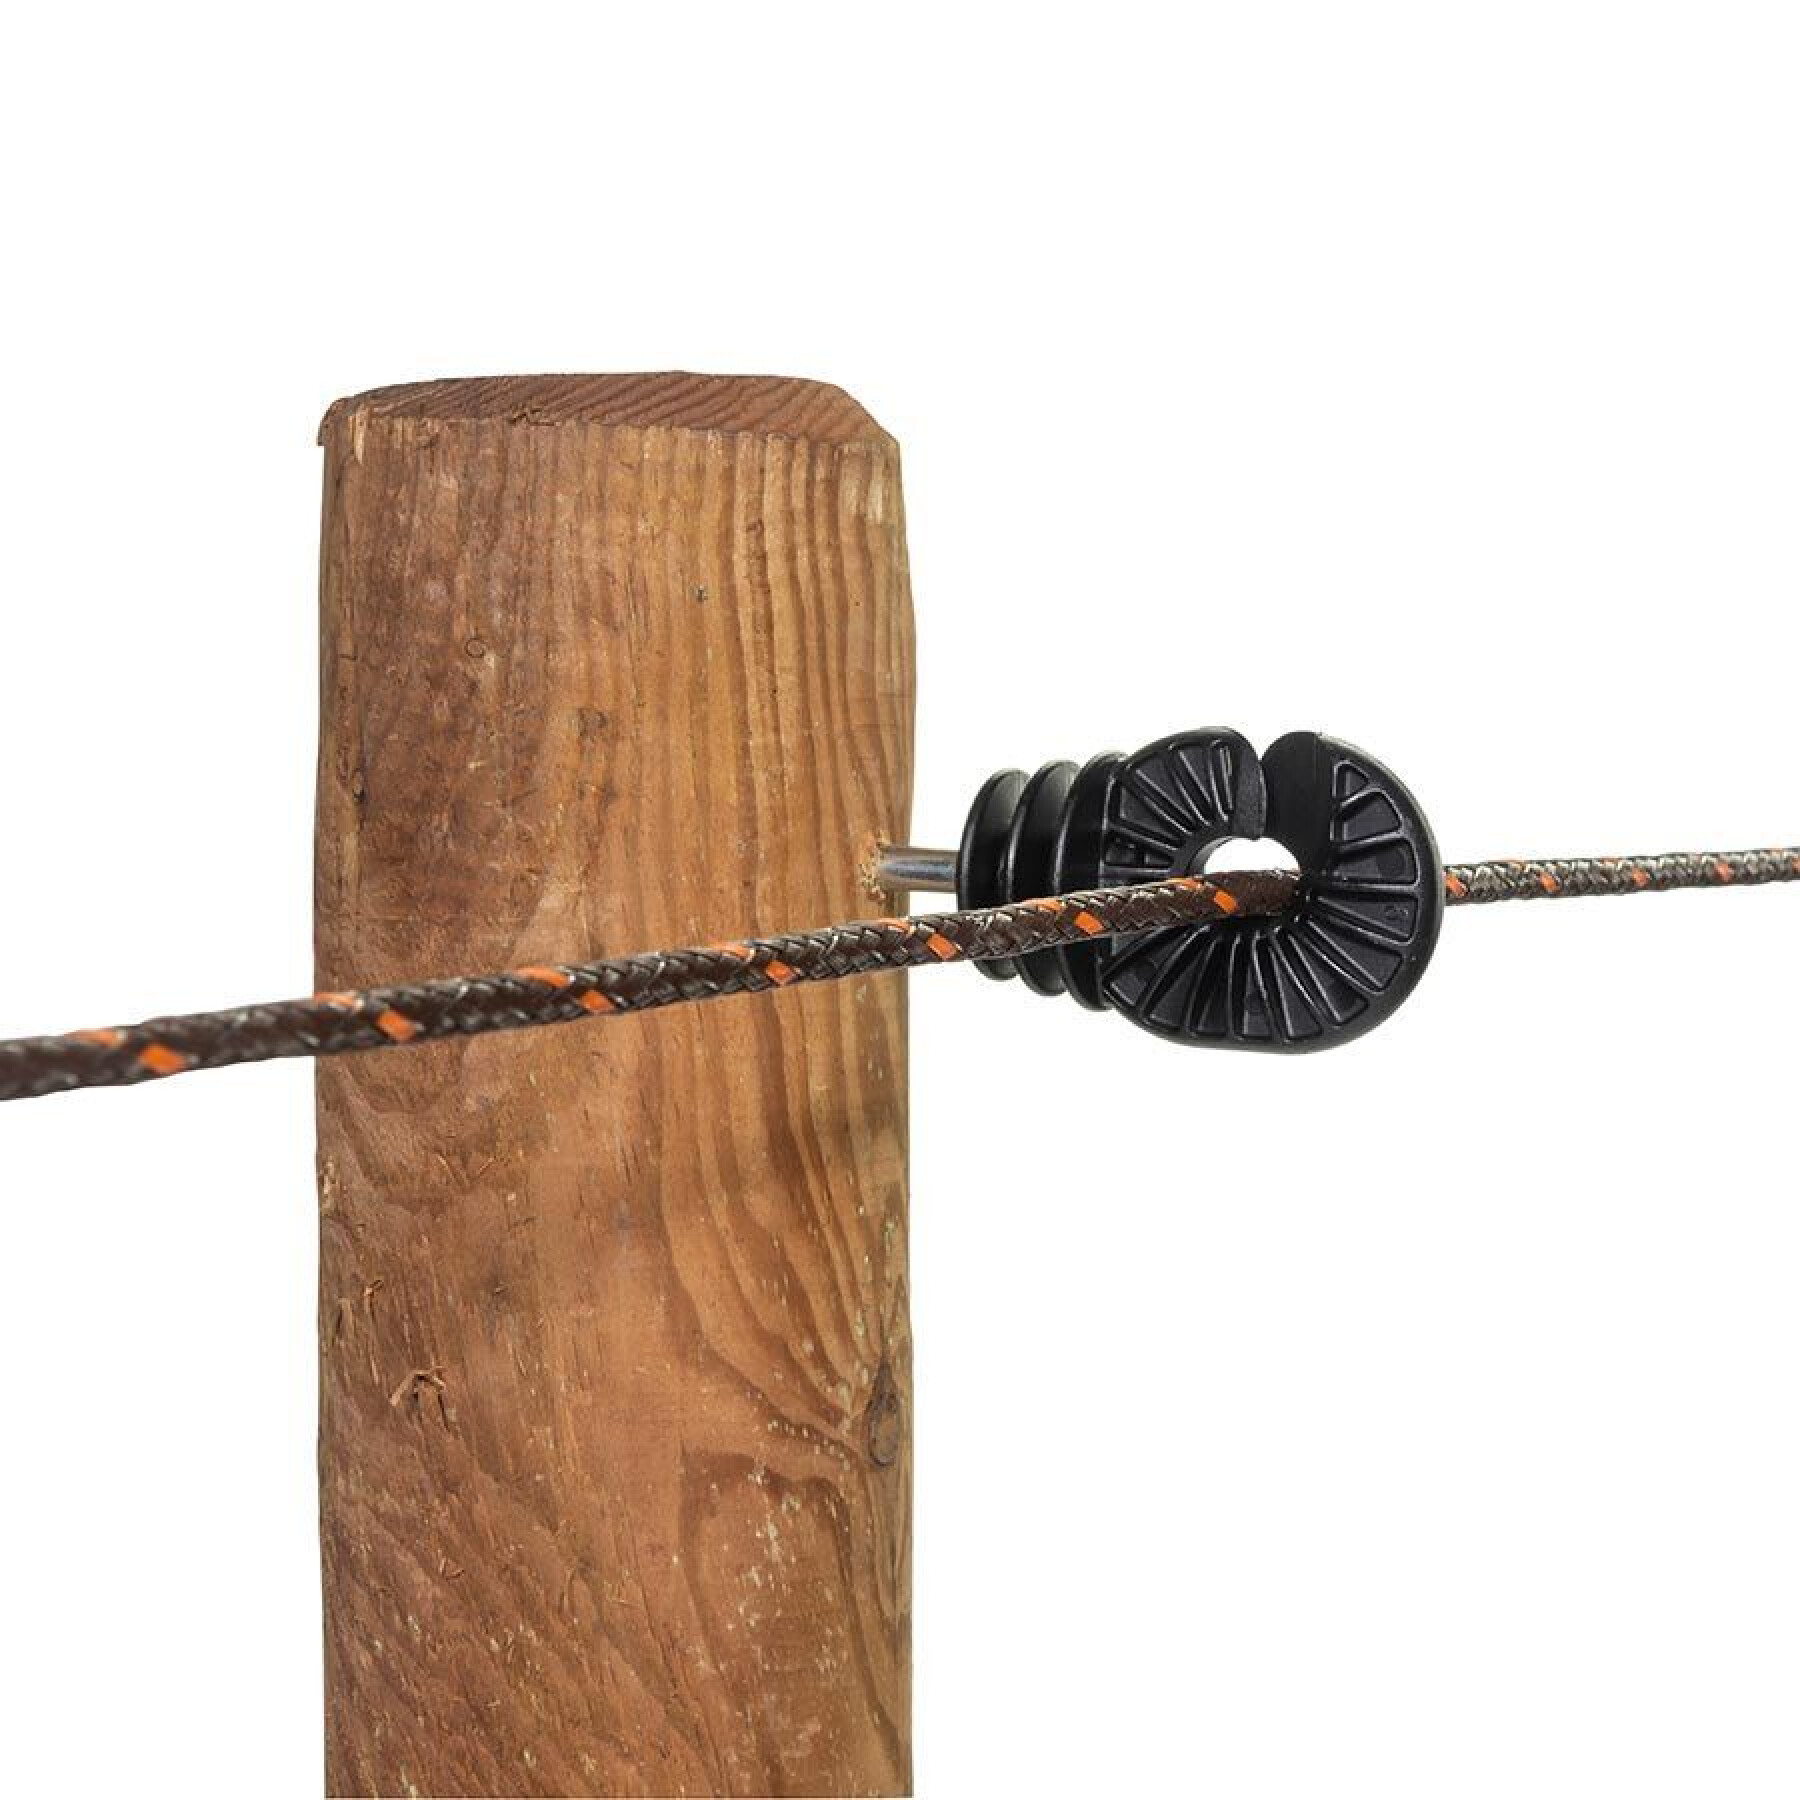 Aisladores para cercas eléctricas de tornillo bs super wood Gallagher (x250)